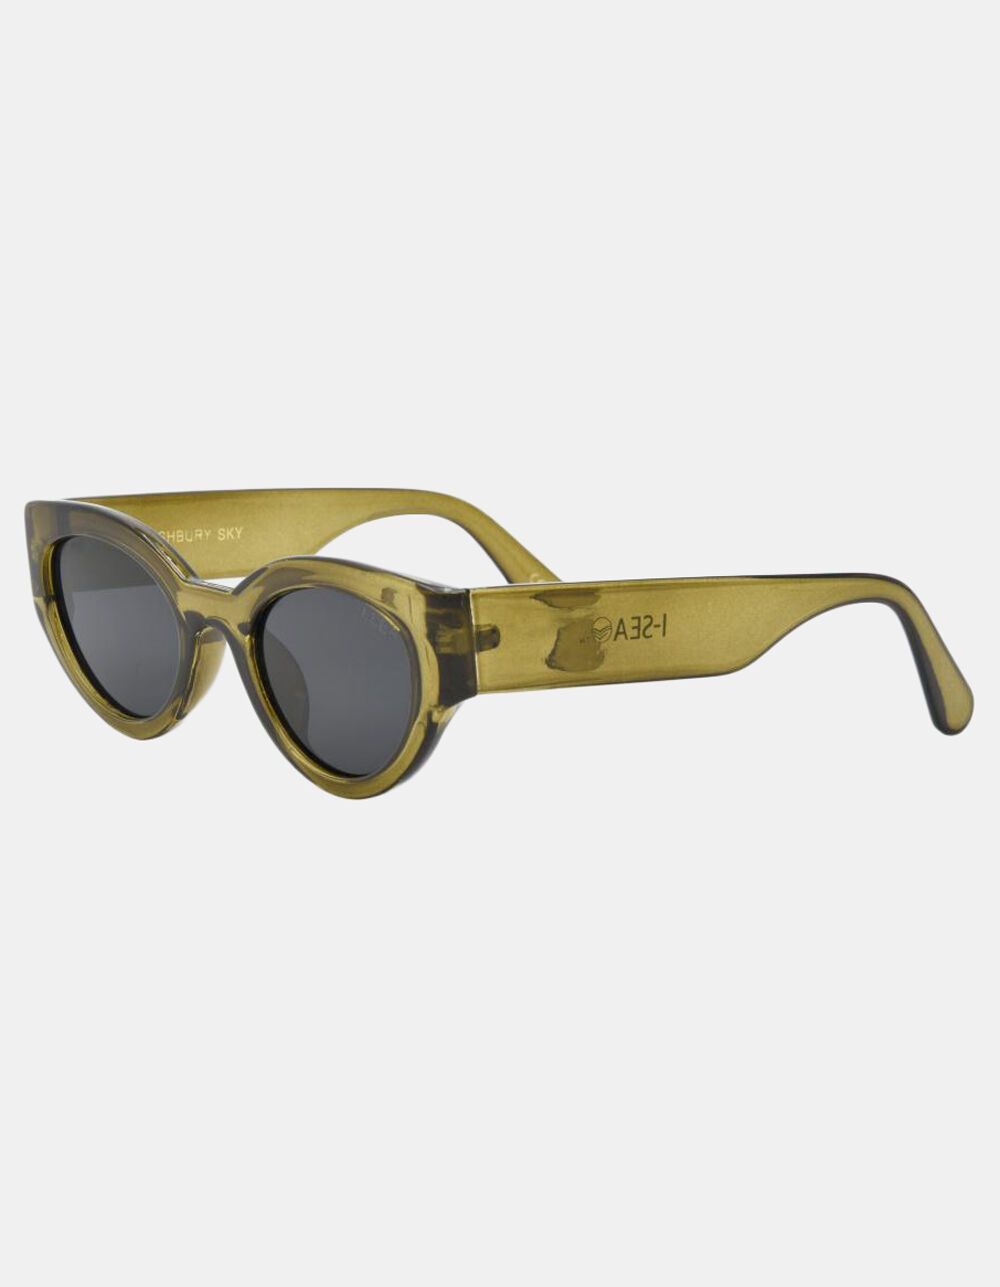 I-SEA Ashbury Sky Olive Smoke Polarized Sunglasses - OLIVE | Tillys | Tillys